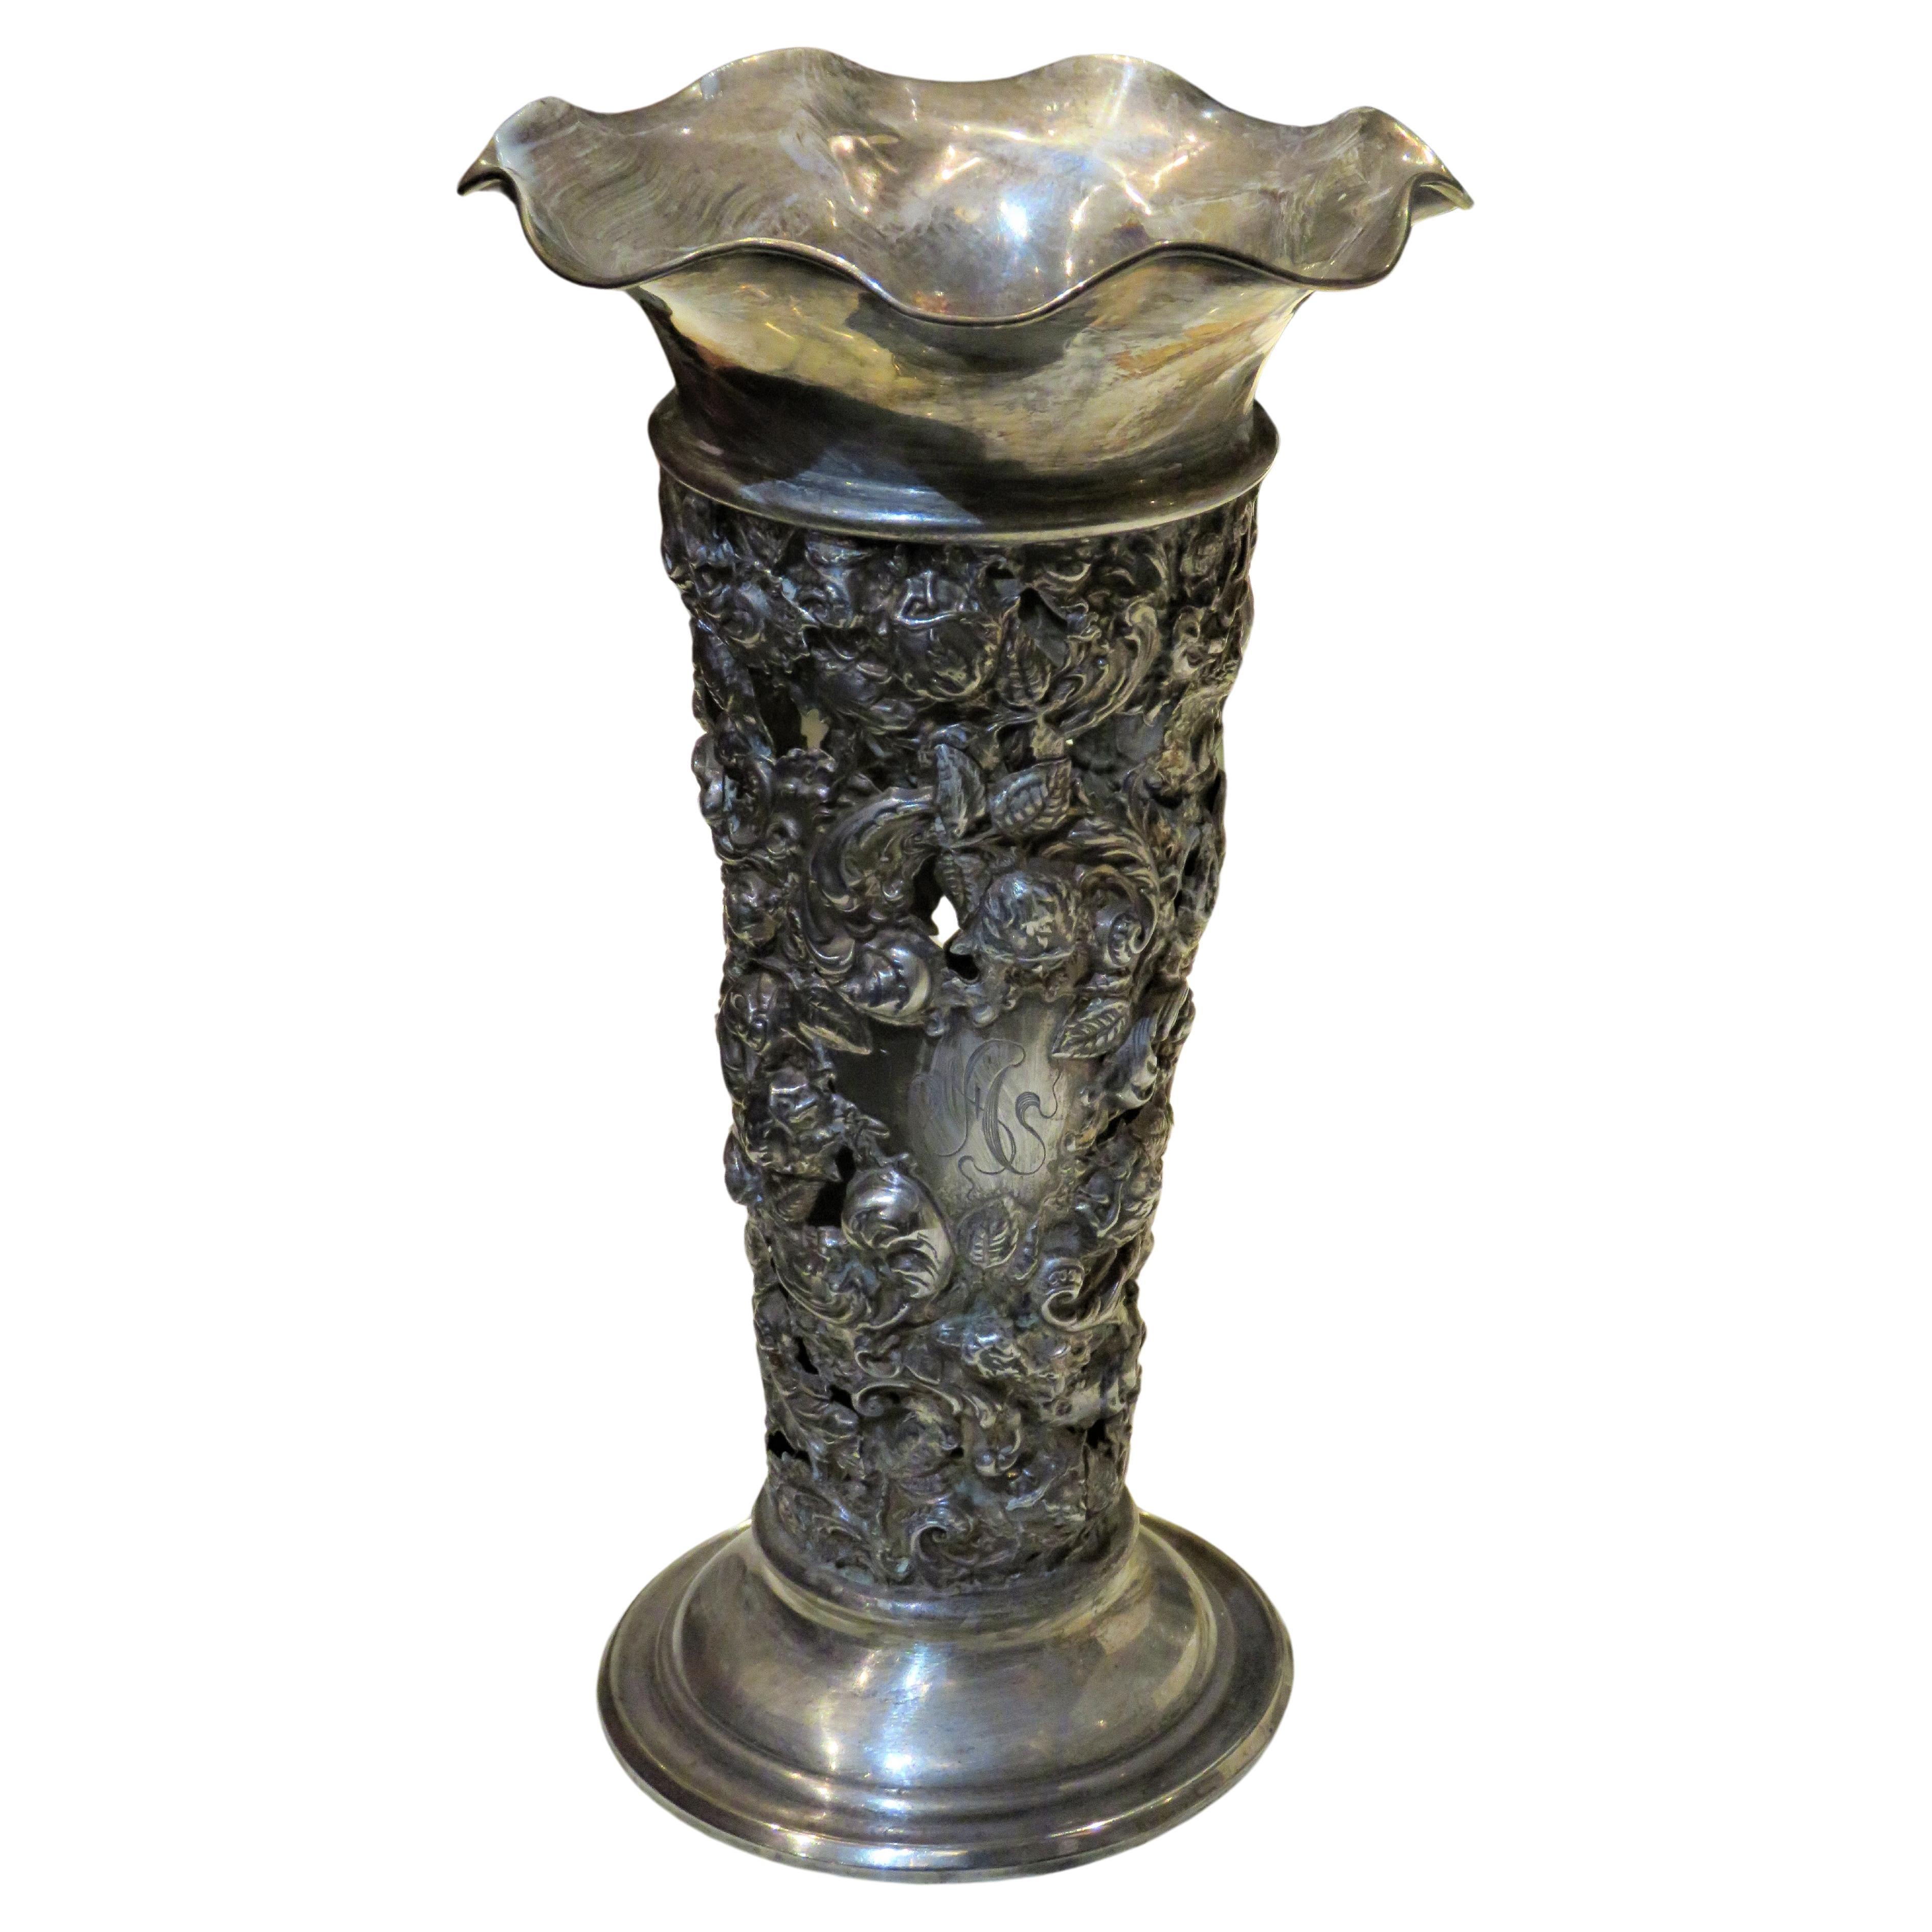 Raro e squisito vaso floreale in argento massiccio francese del XIX secolo